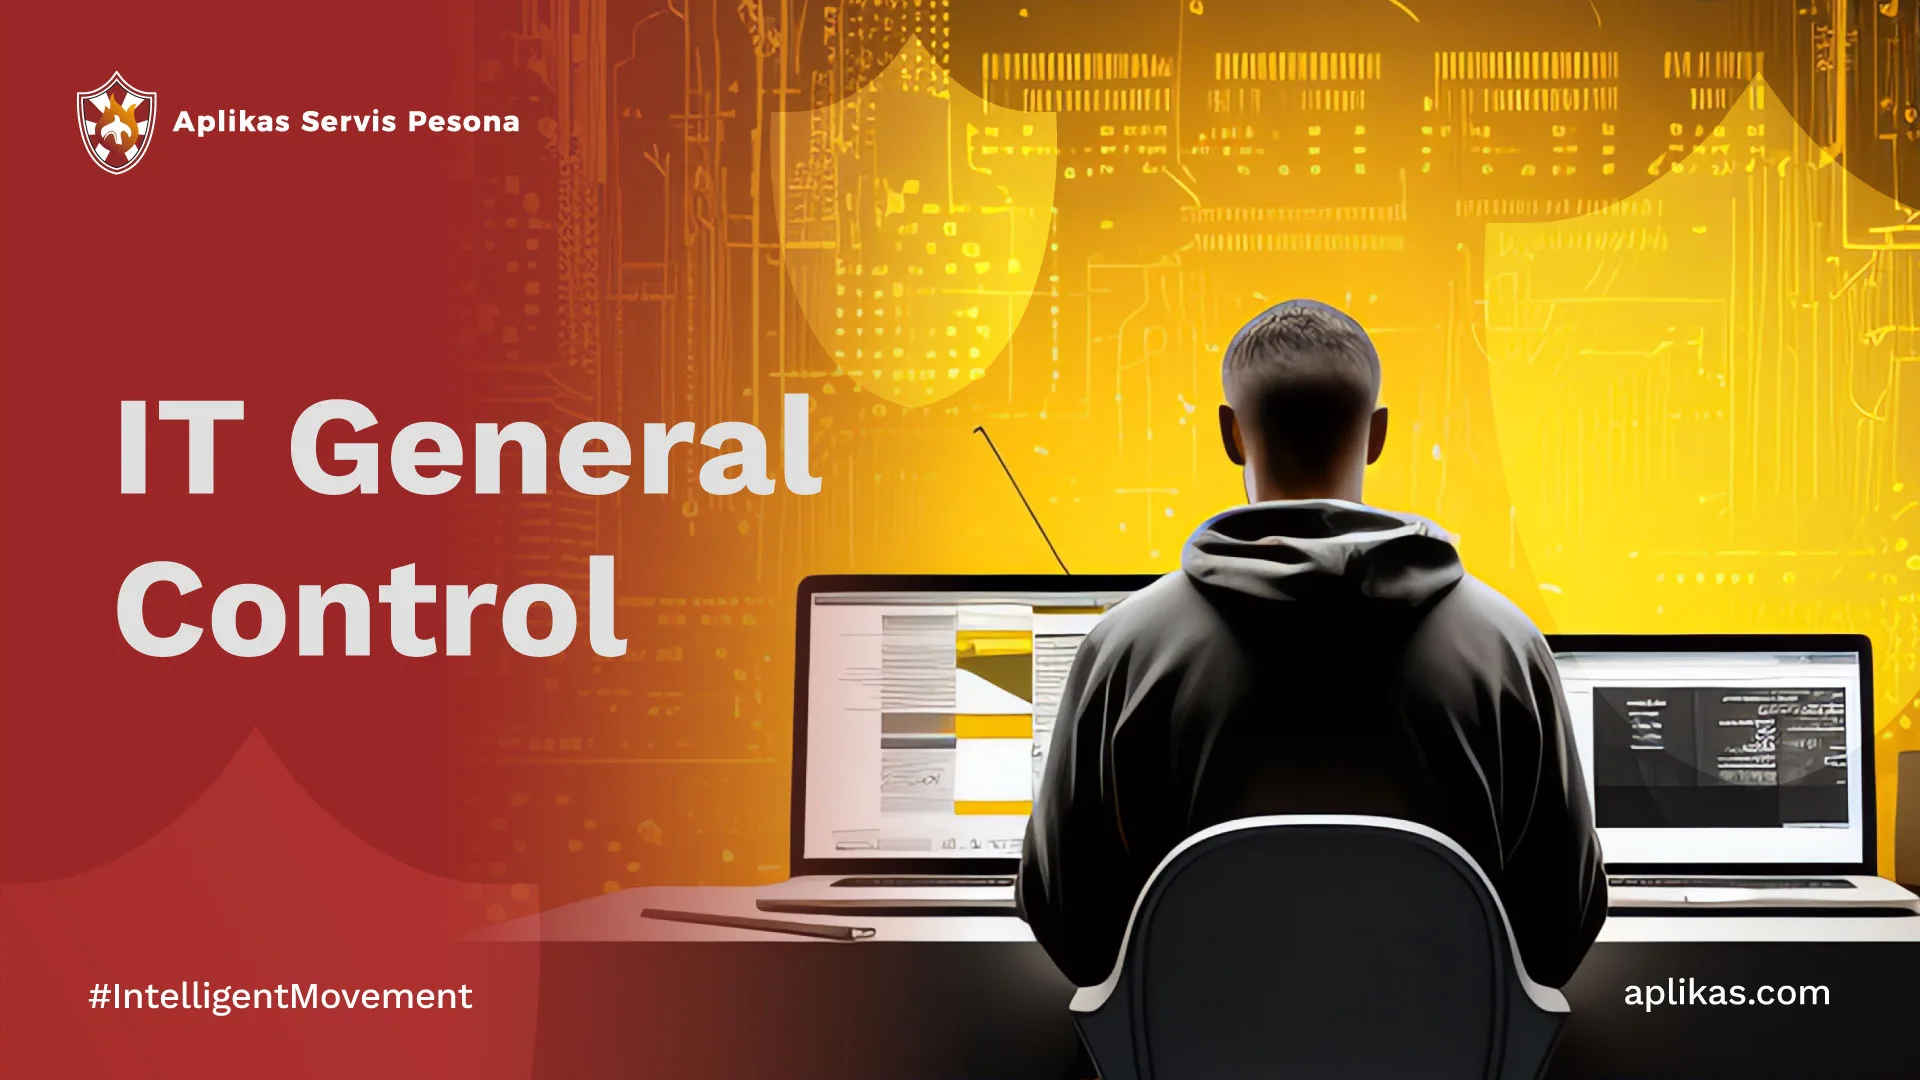 IT General Control: Membangun Pengelolaan IT yang Lebih Baik